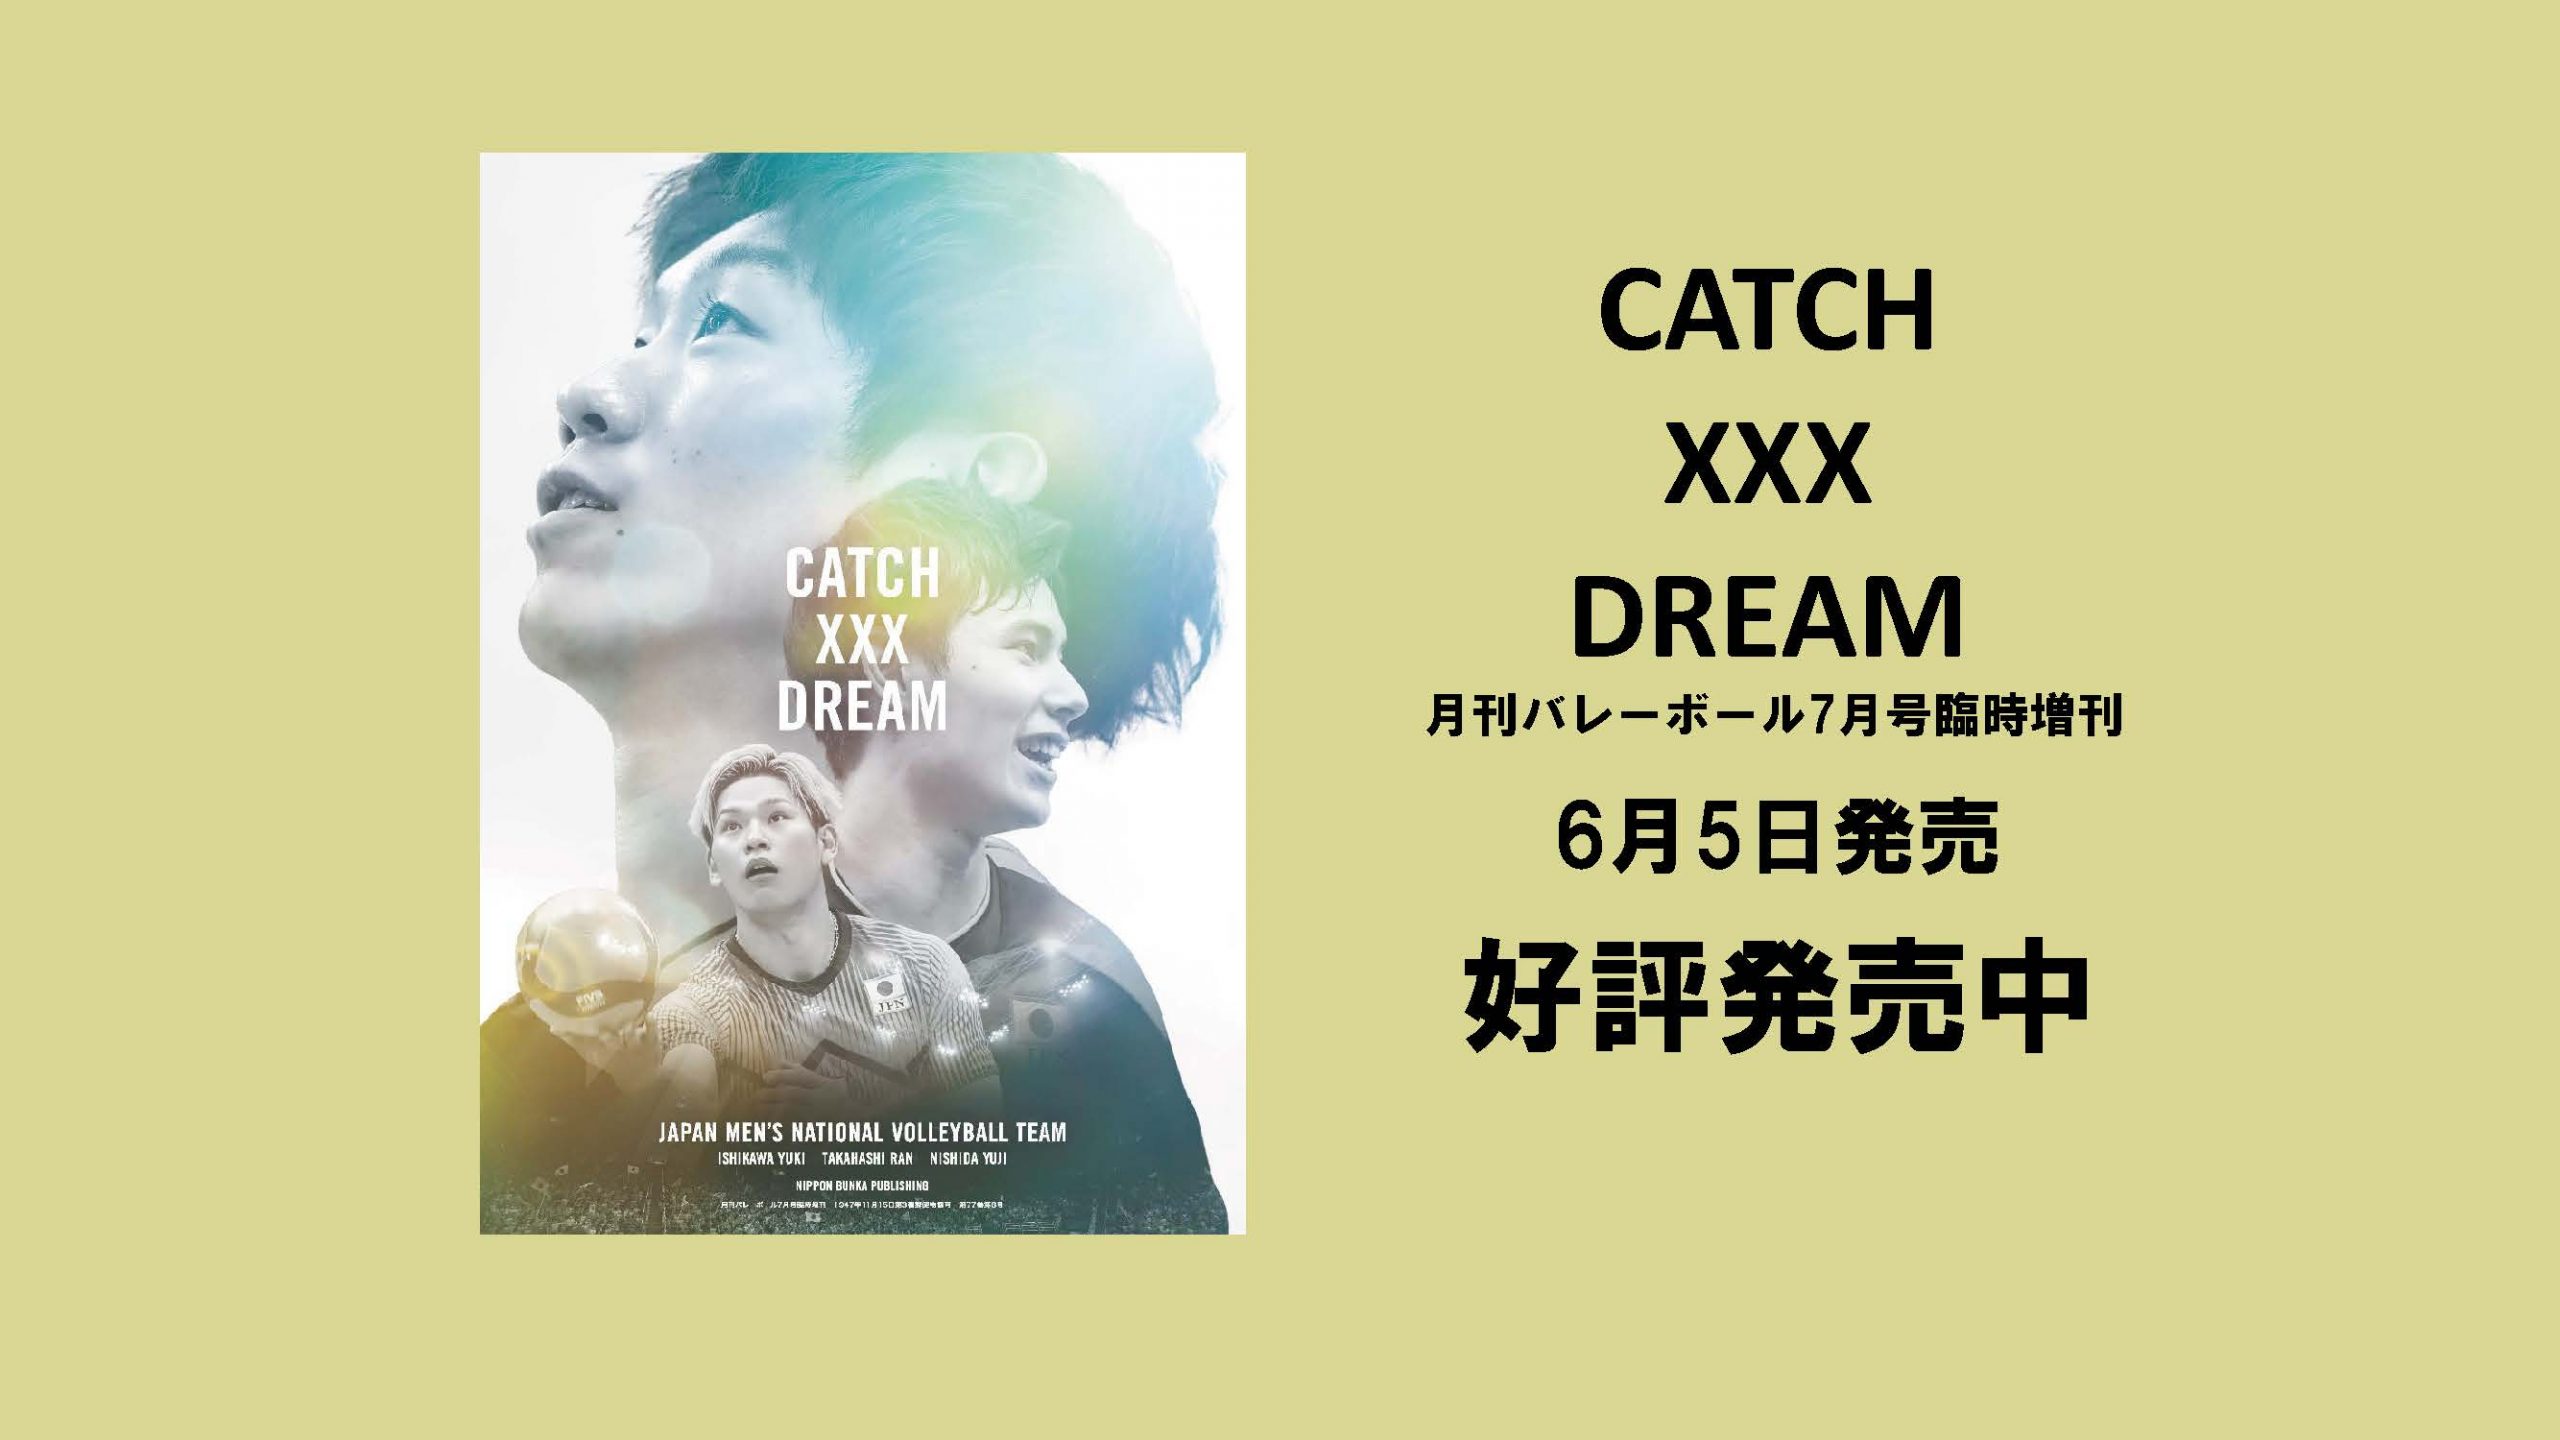 CATCH XXX DREAM